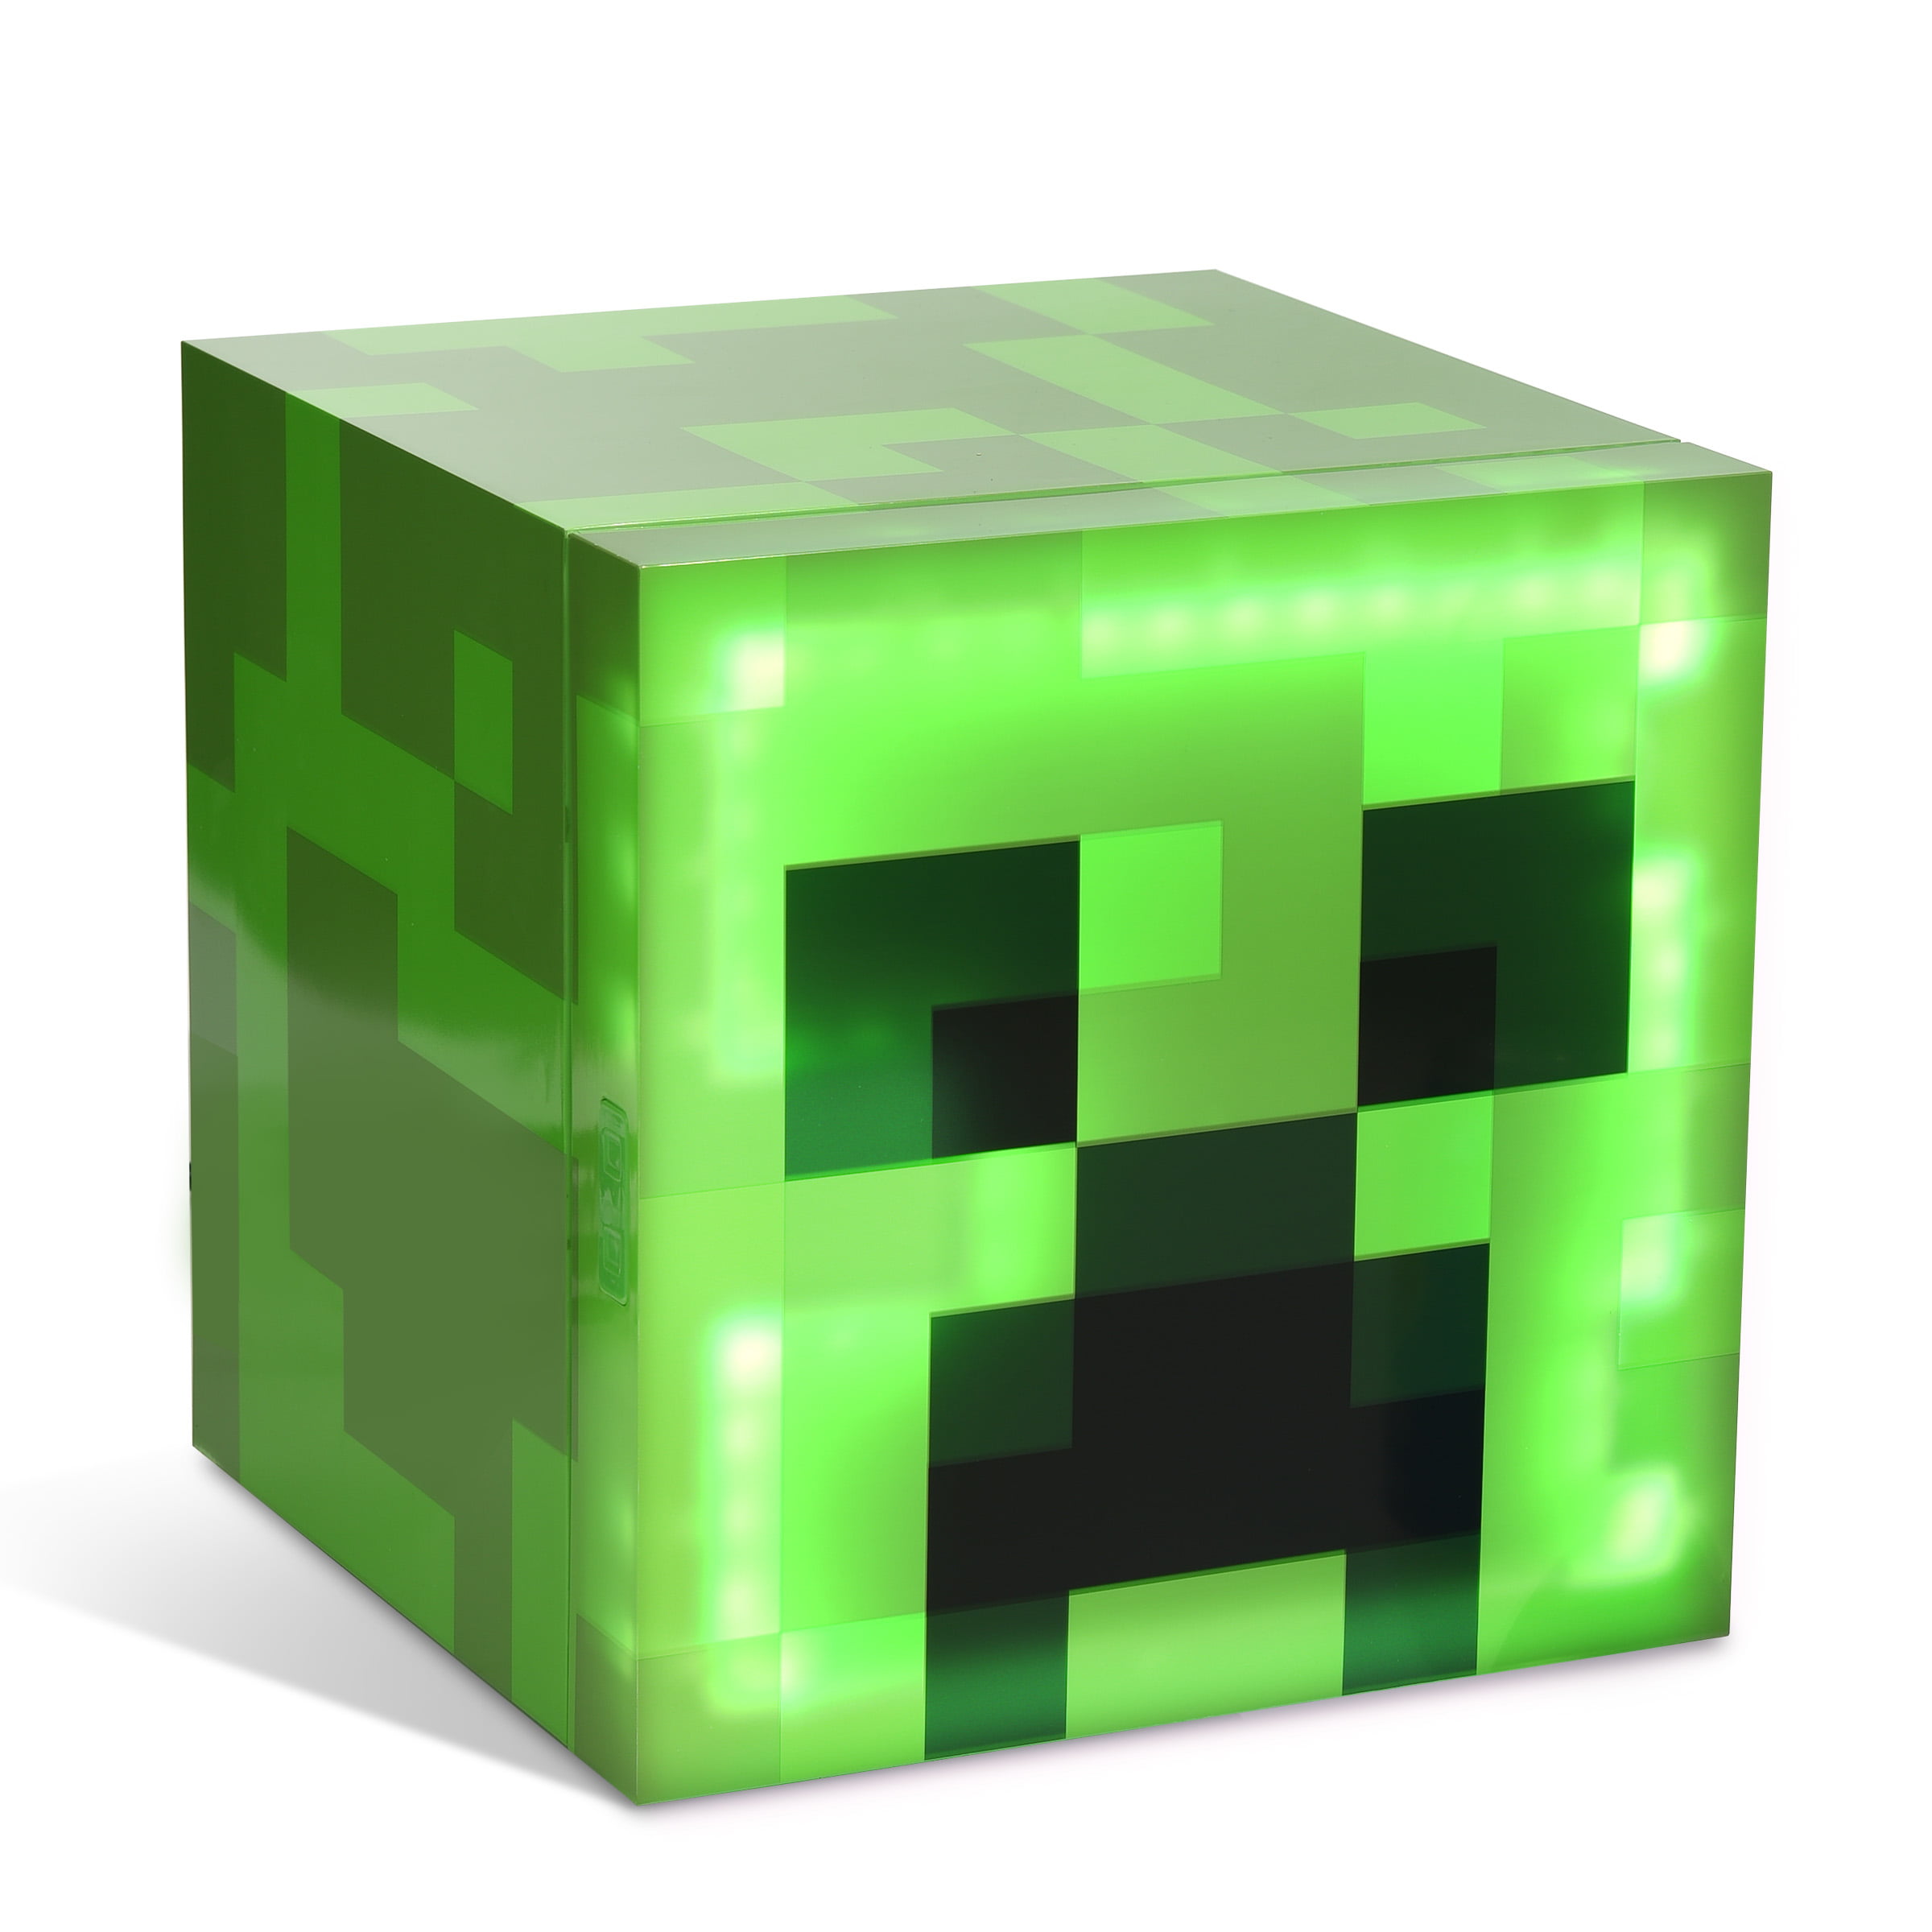 Minecraft Green Creeper or Red TNT 9 Can 1-Door 6.7L Mini Fridge w/ Ambient Lighting $68, Minecraft Green Creeper Body 12 Can 8L w/ Ambient Lighting $98 + Free Shipping